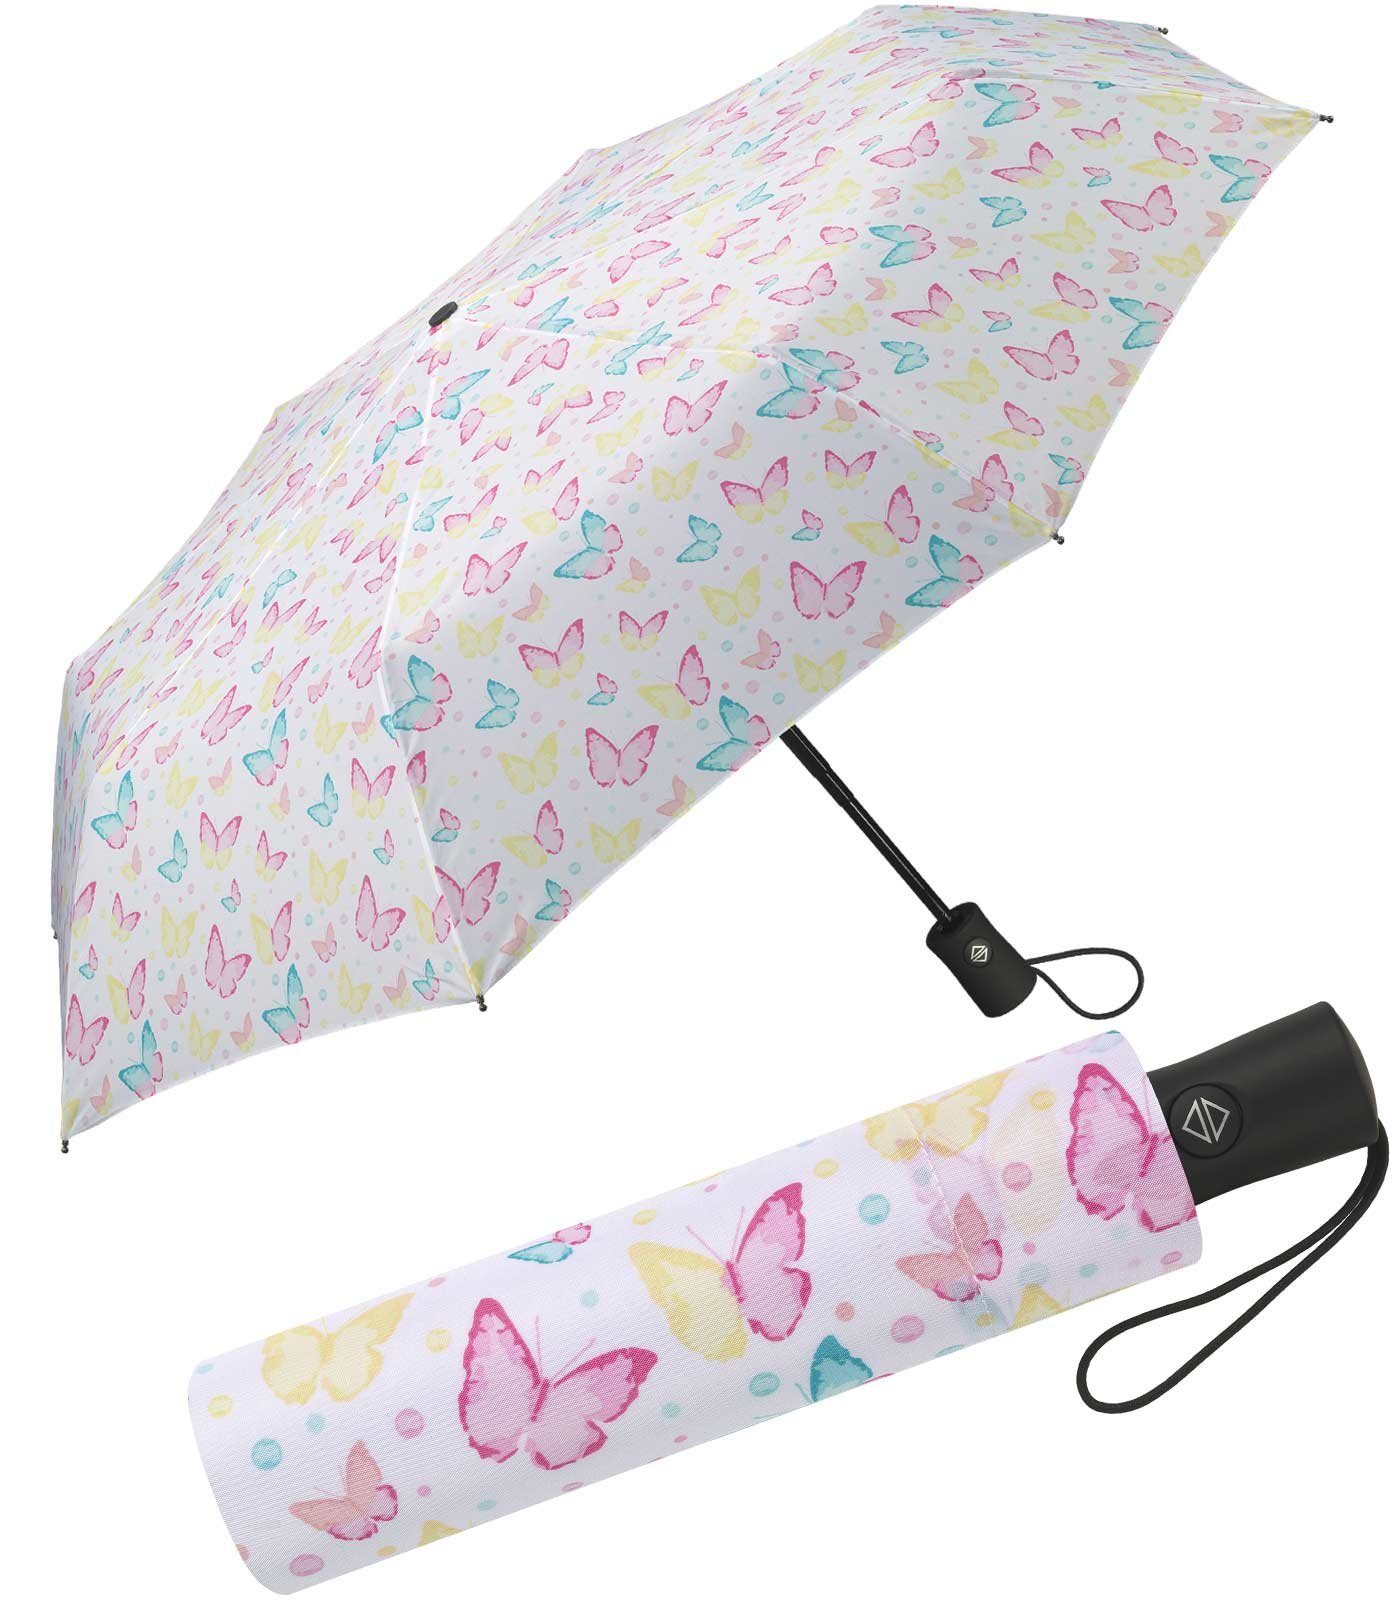 Motive zauberhafte Pastellfarben Taschenregenschirm HAPPY mit Auf-Zu-Automatik, in schöner RAIN Damen-Regenschirm zarten